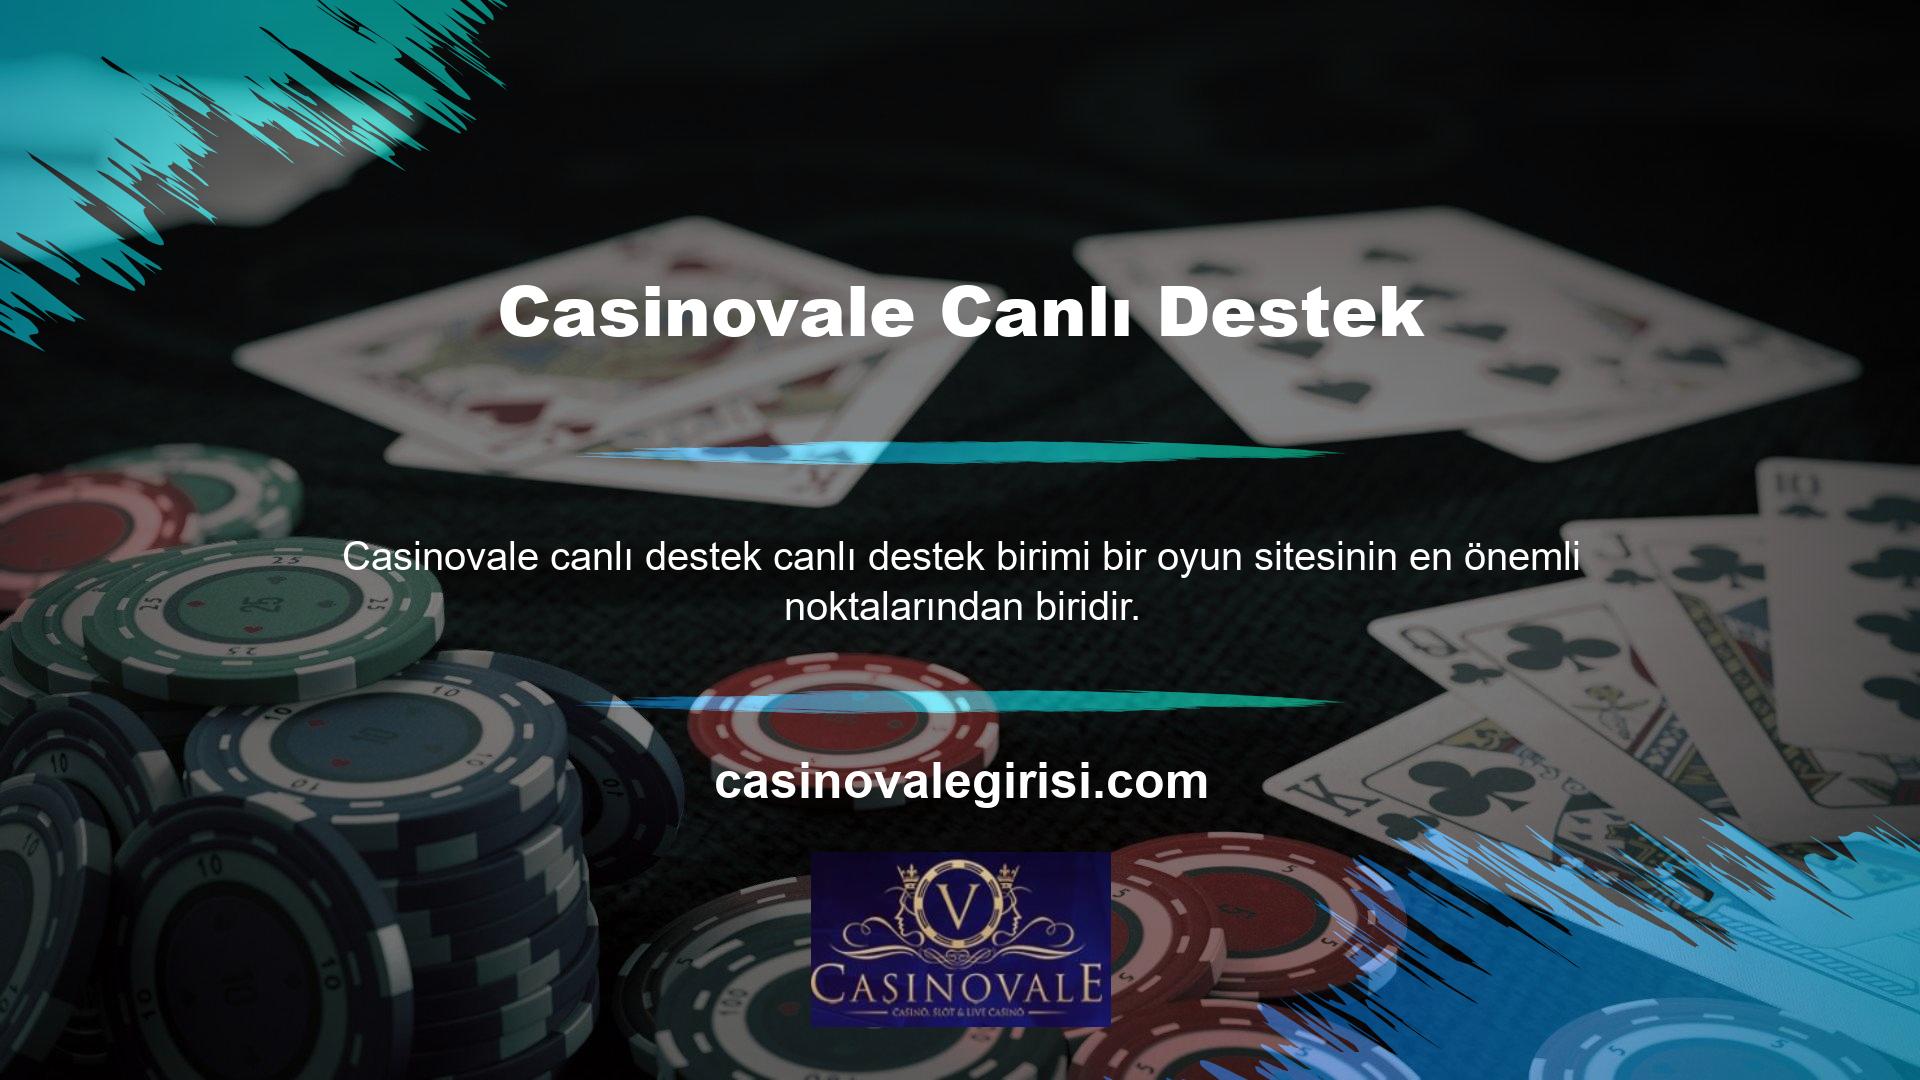 Casinovale, özellikle kullanıcıların Casinovale doğrudan destek hattına ihtiyaç duyduğu sorunlarda en hızlı hizmeti sağlar